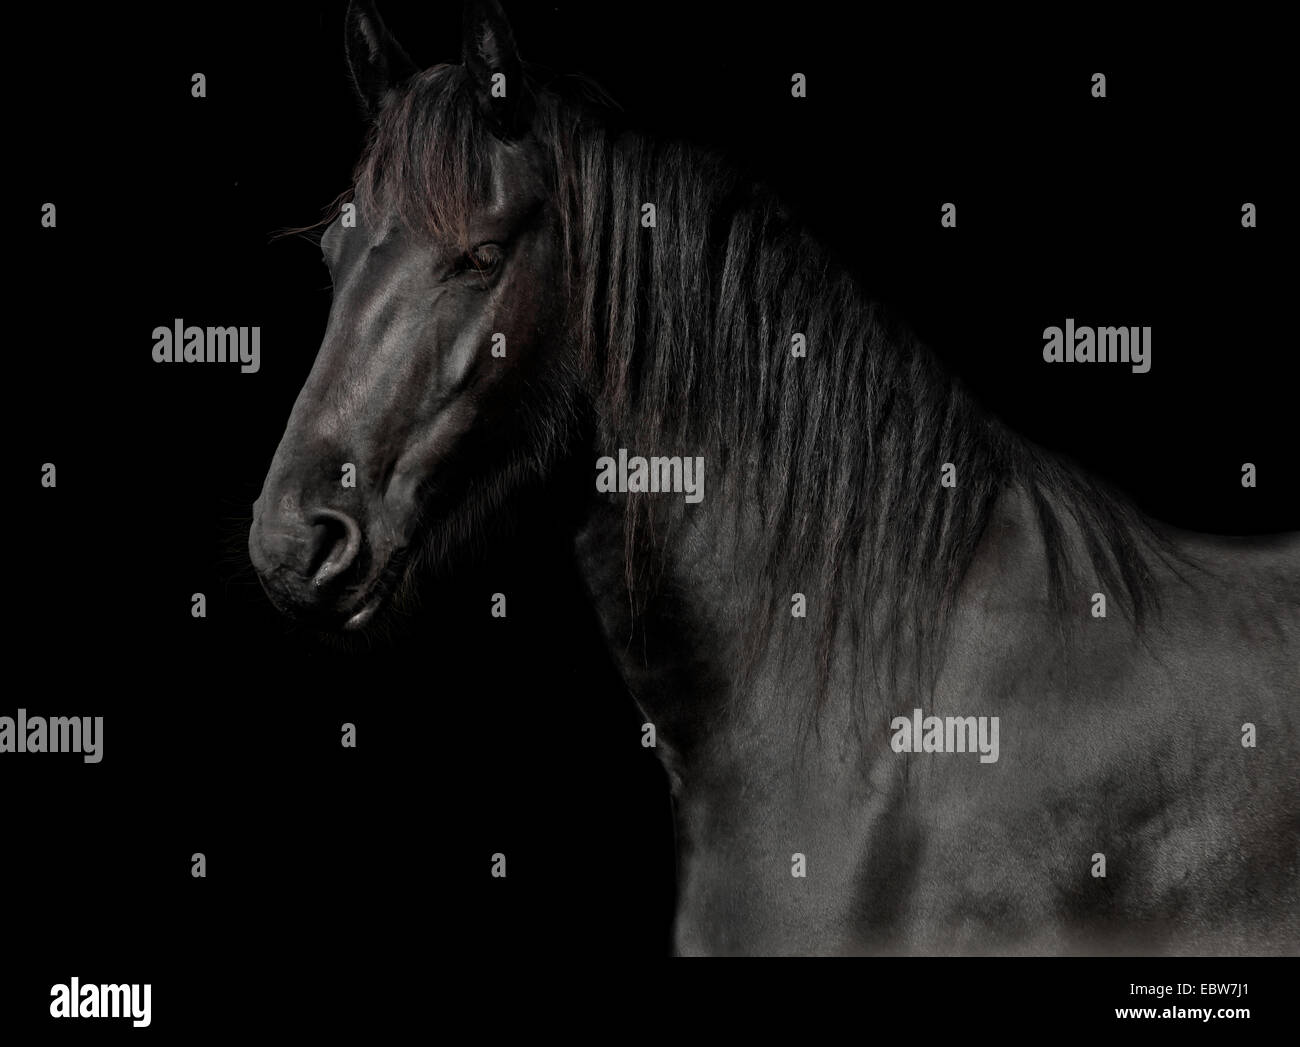 Cavallo nero della gara il frisone in studio contro uno sfondo scuro Foto Stock